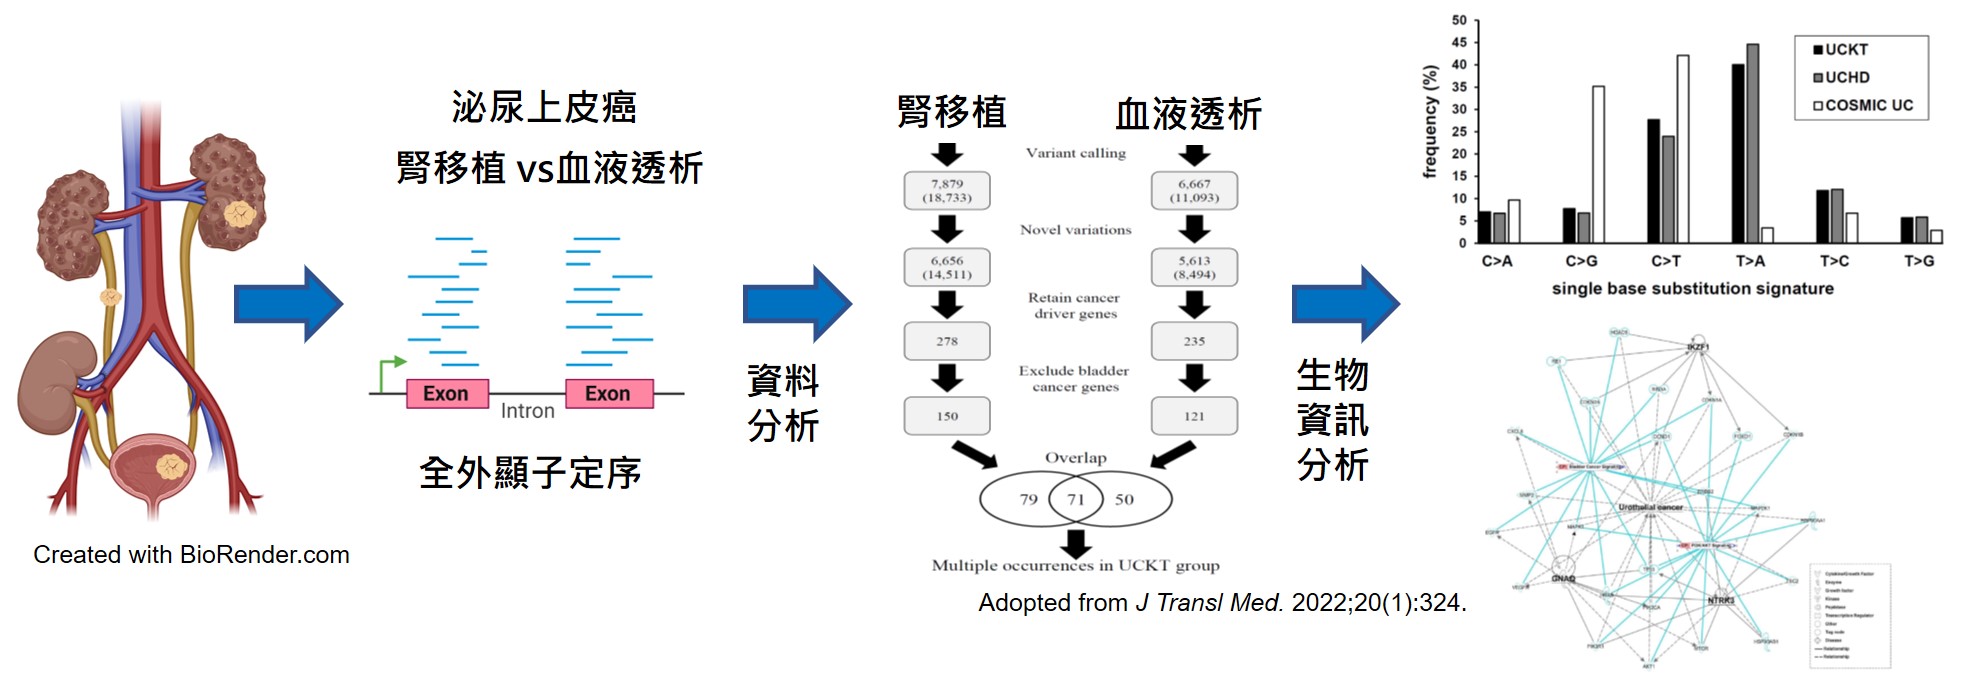 郭弘典 腎移植術後泌尿上皮癌的基因變異 中文圖形摘要